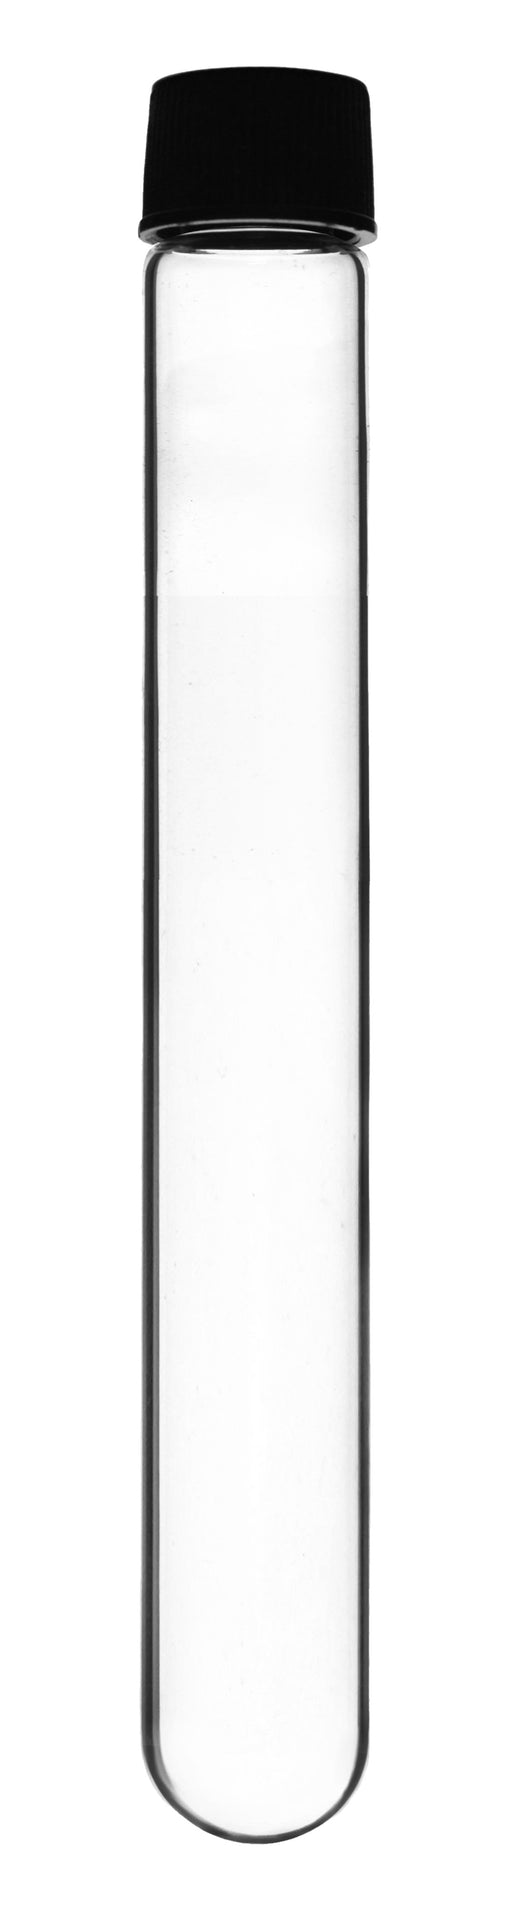 Test Tube with Bakelite Screw Cap, 60ml - 7.8" x 1"